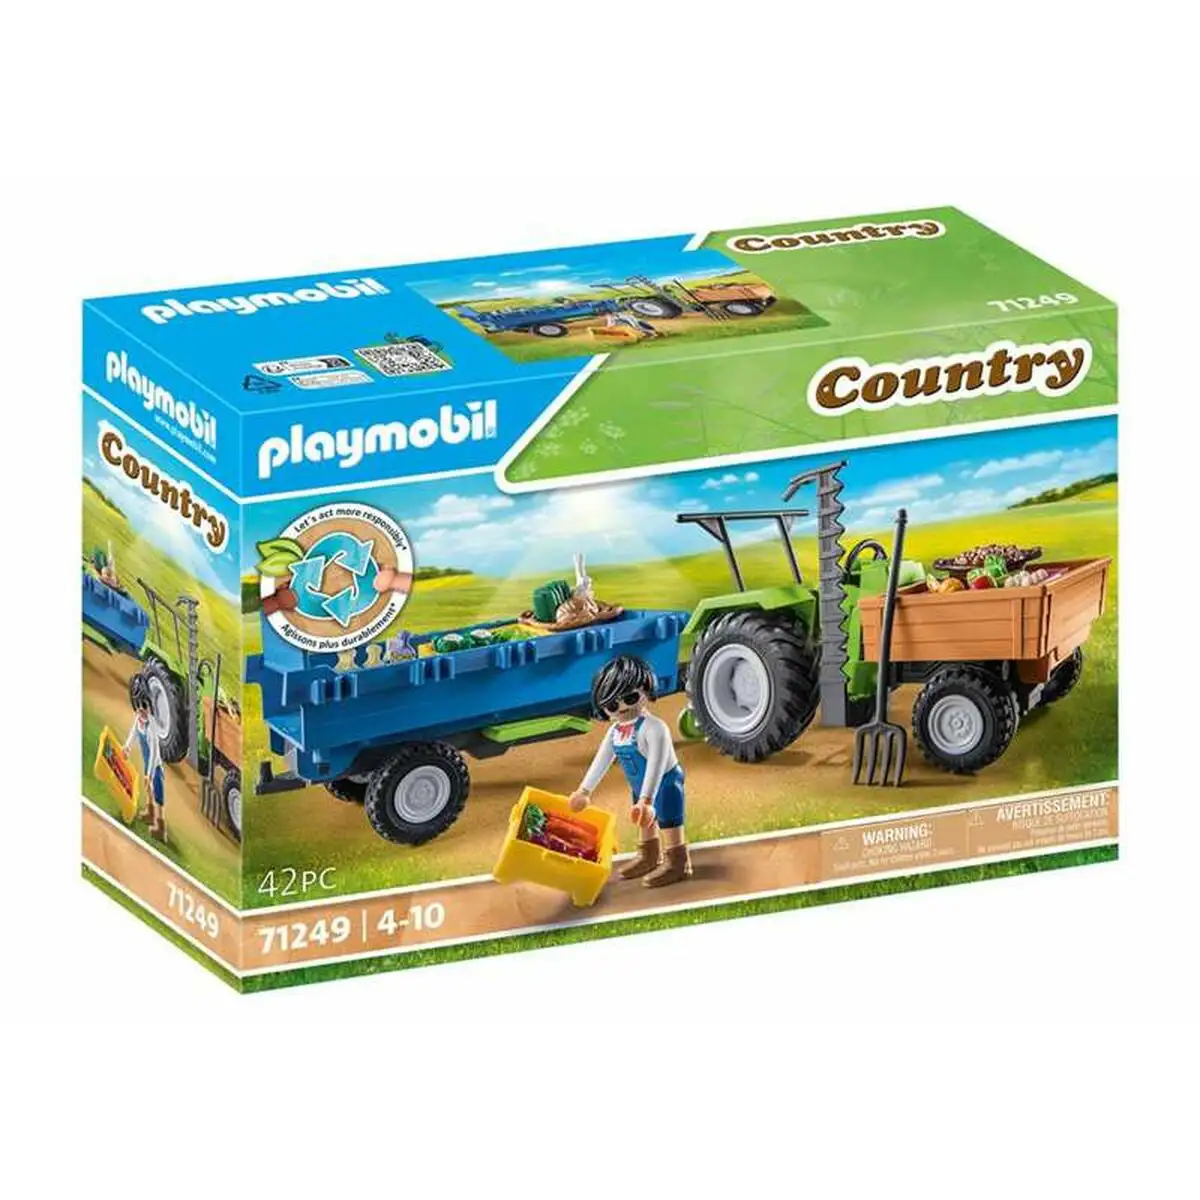 Playset playmobil country tractor 42 pieces_4504. Bienvenue sur DIAYTAR SENEGAL - Où l'Authenticité Rencontre le Confort. Plongez dans notre univers de produits qui allient tradition et commodité pour répondre à vos besoins.